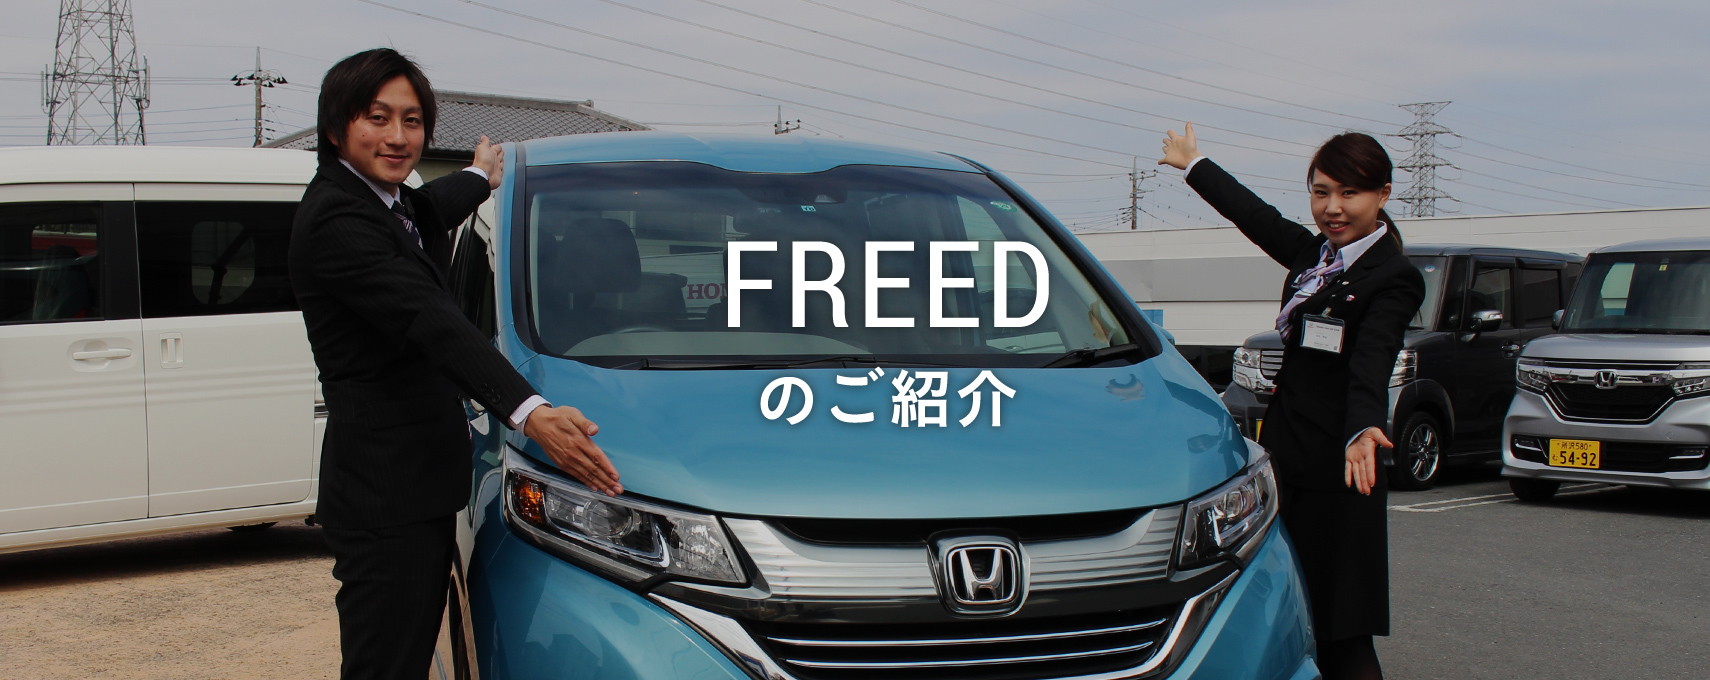 おすすめ車 Freed Honda Cars 志木